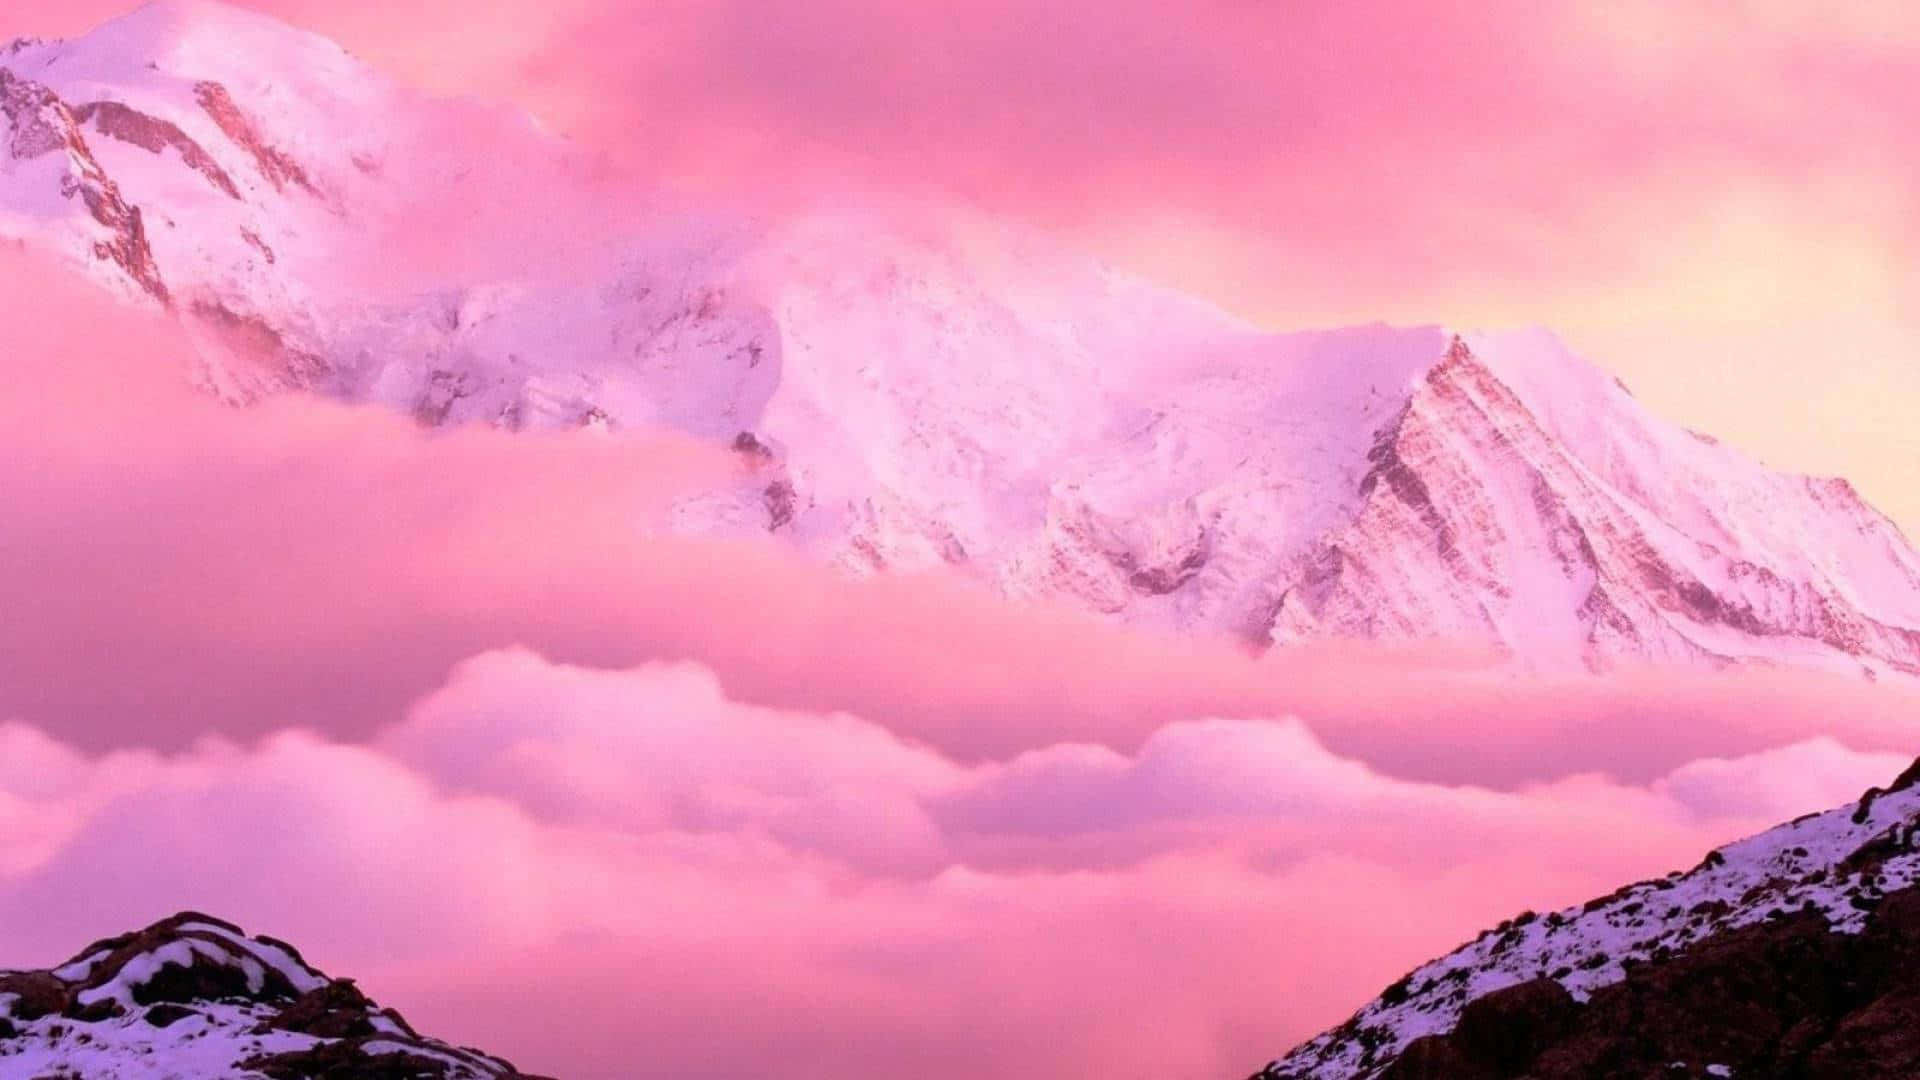 Sfondoestetico Rosa Con Montagna Di Neve.